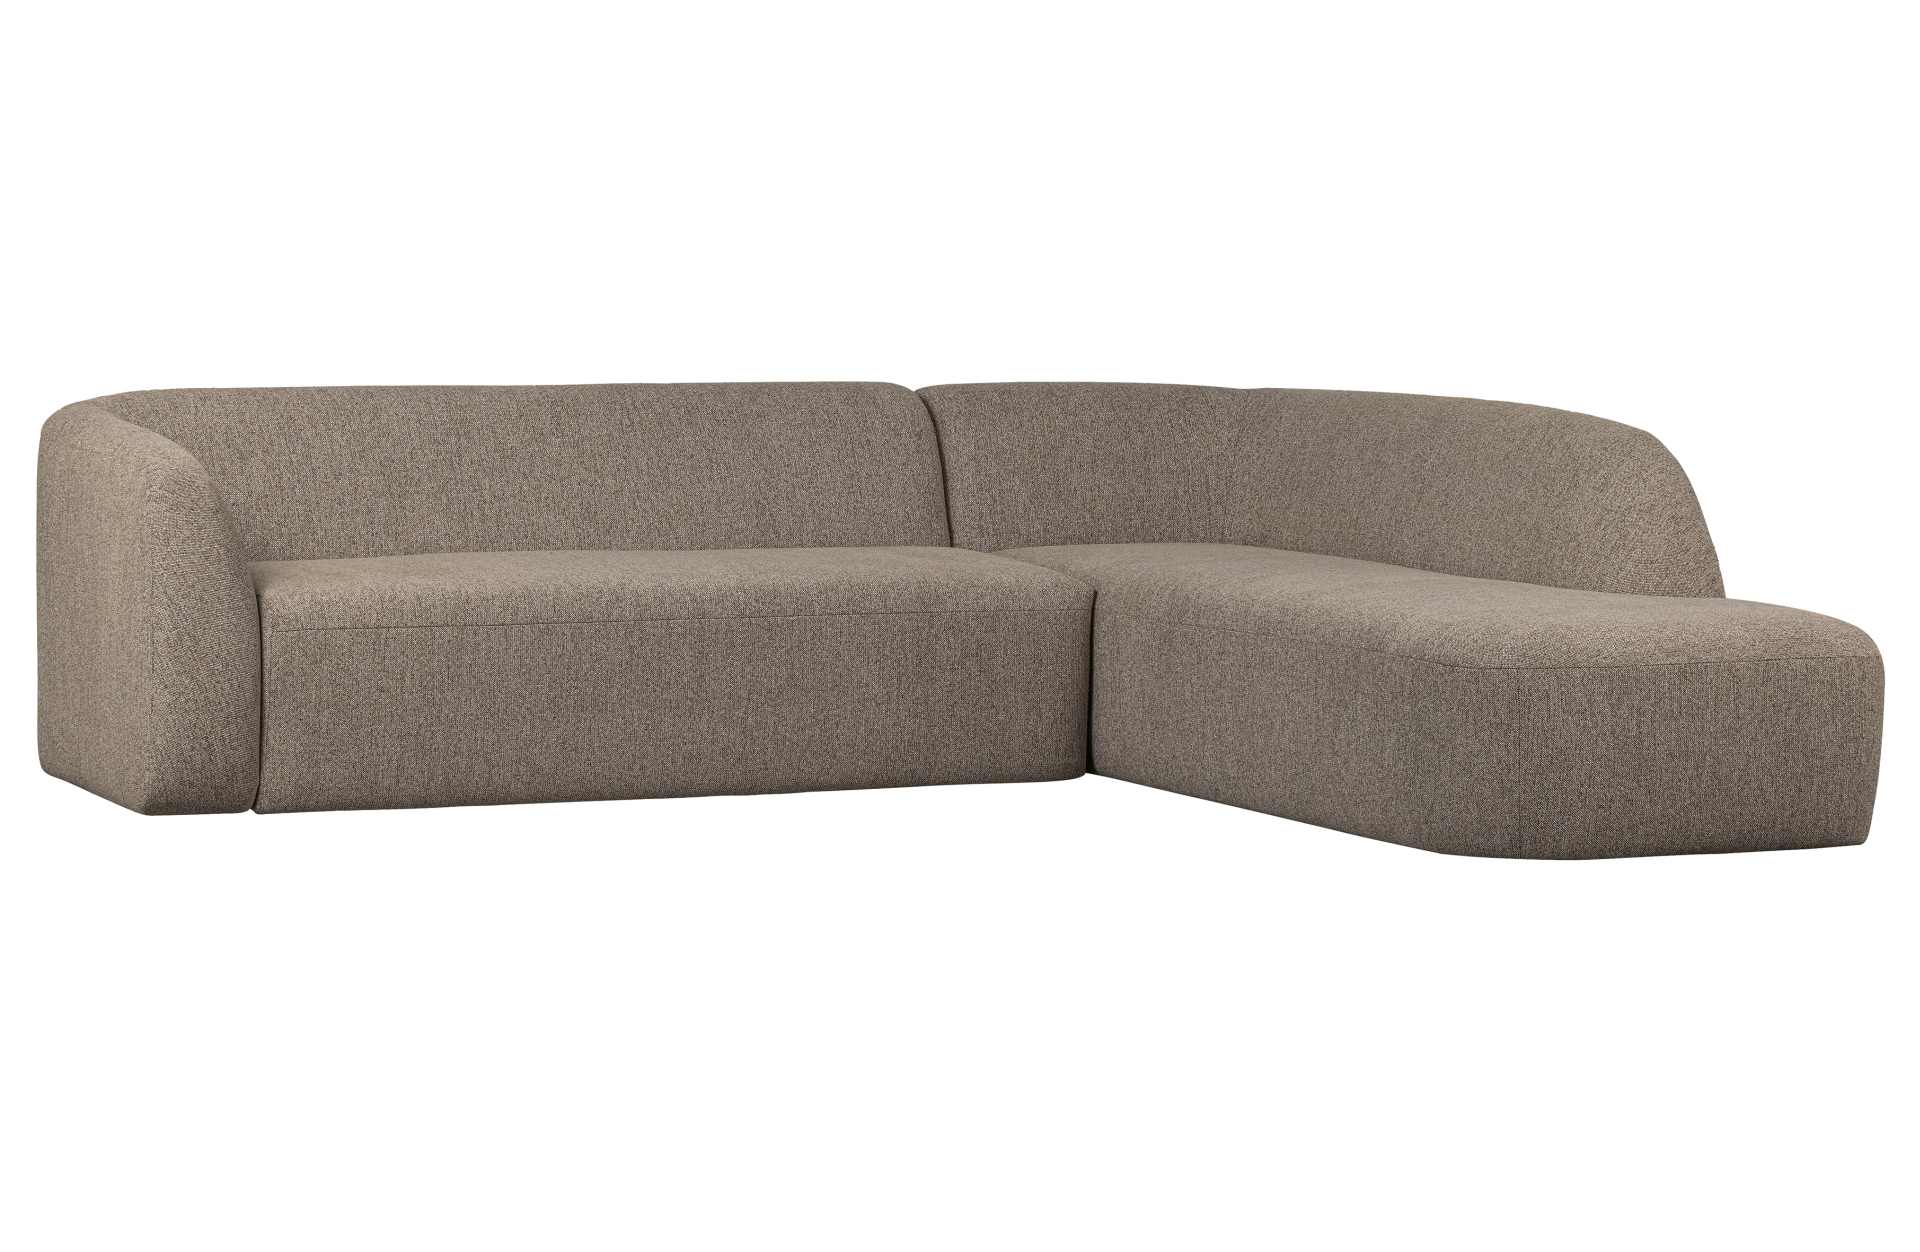 Das Ecksofa Sloping wurde aus bequemen Stoff gefertigt, welcher einen Braunen Farbton besitzt. Das Sofa ist ein echter Hingucker für dein Zuhause, denn es hat ein modernes Design, welches zu jeder Inneneinrichtung passt.